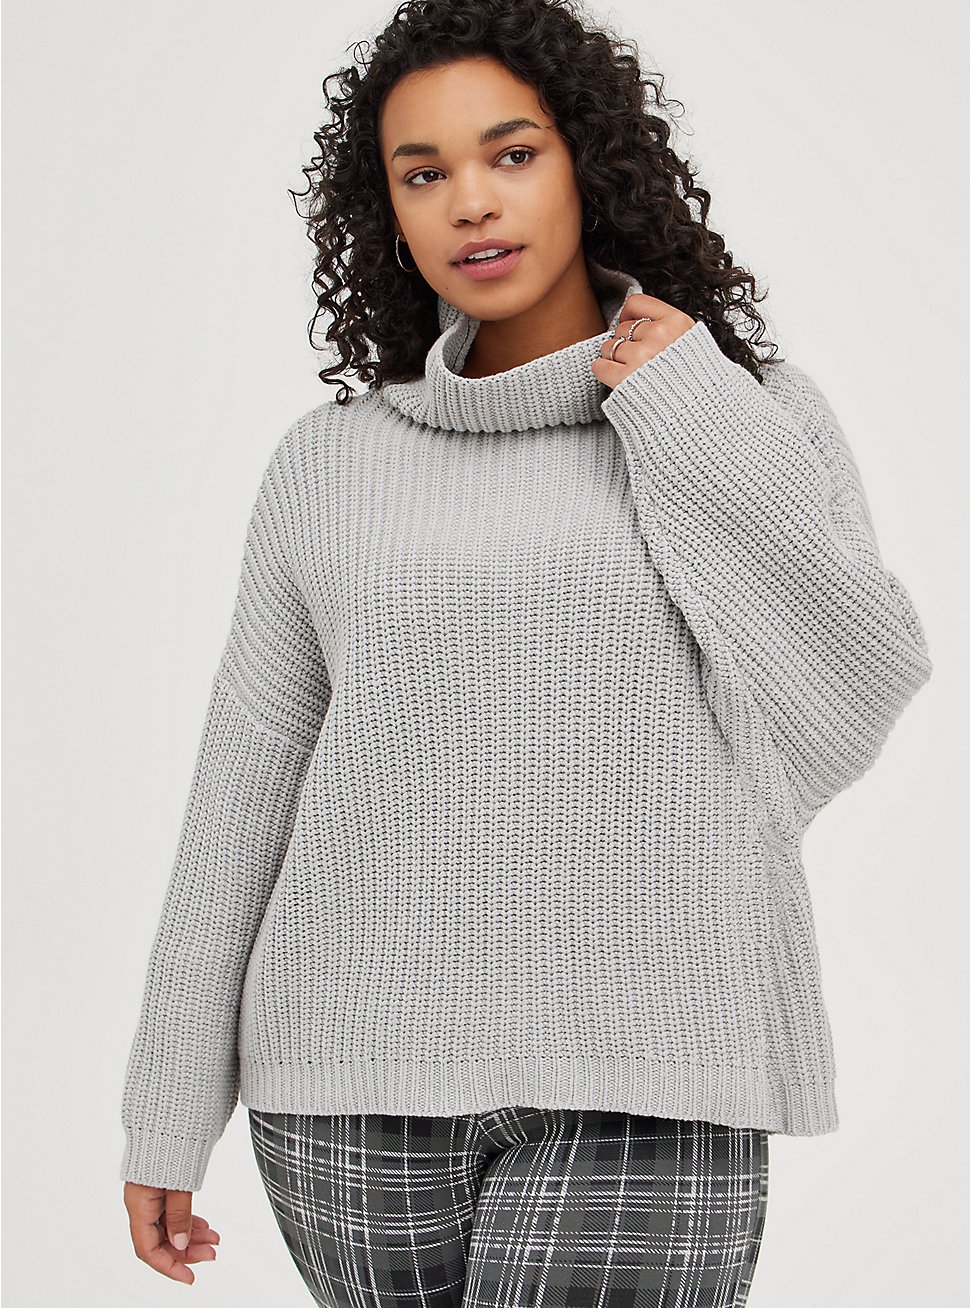 Drop Shoulder Turtle Neck Sweater - Light Grey, LIGHT GREY, hi-res